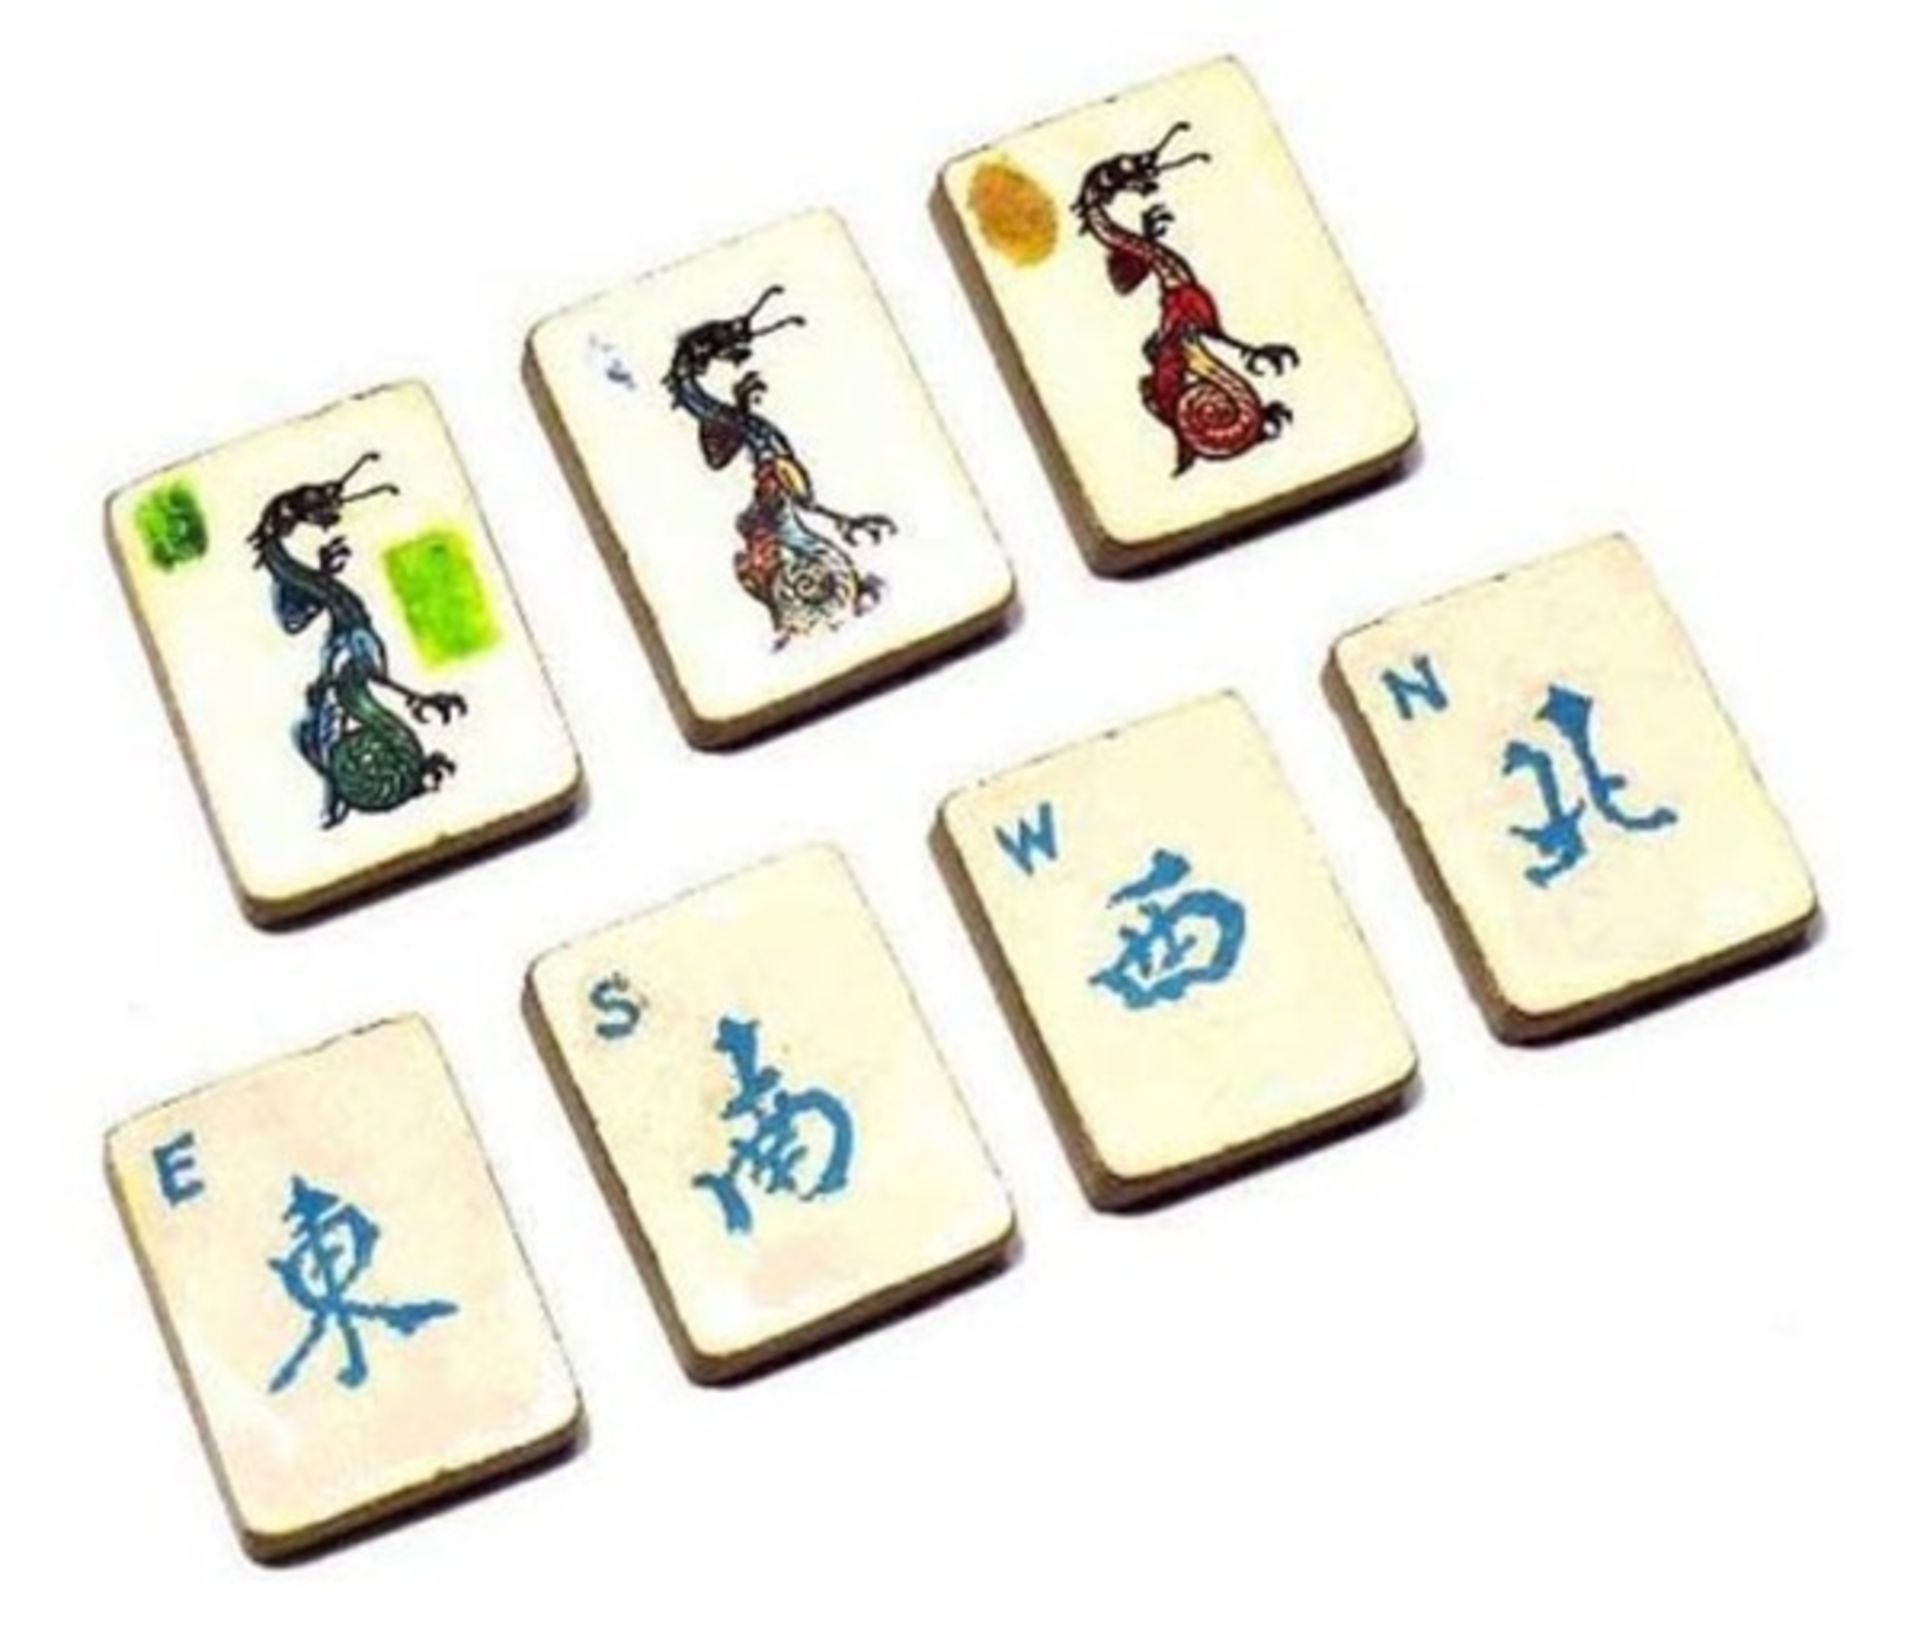 (Mahjong) Mahjong Europees, De Sala Spelen met het Rode zegel, ca. 1930 - Bild 3 aus 16